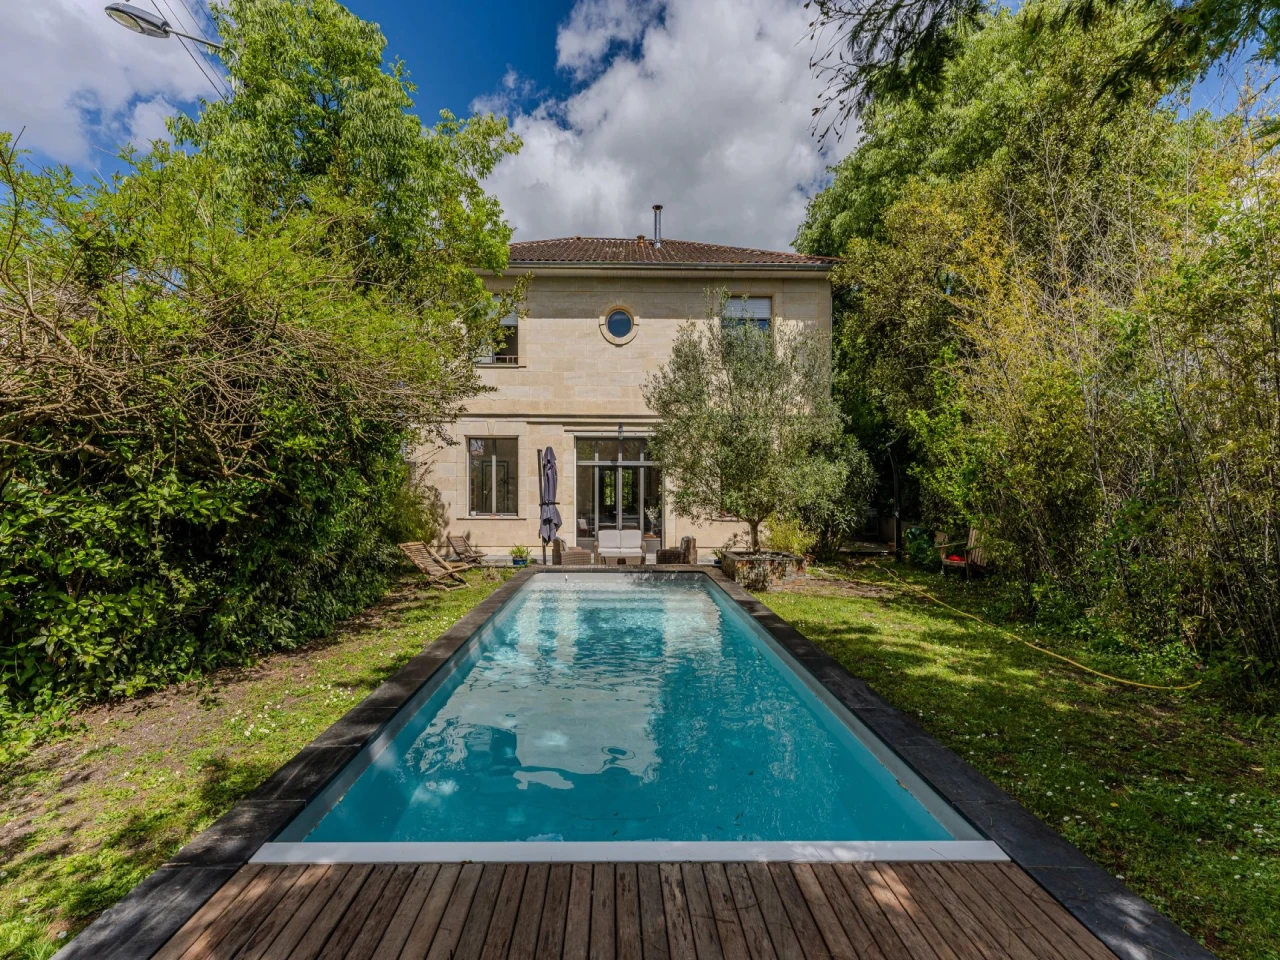 NOUVEAUTÉ maison à vendre Maison Familiale avec piscine et jardin  - Bordeaux Caudéran